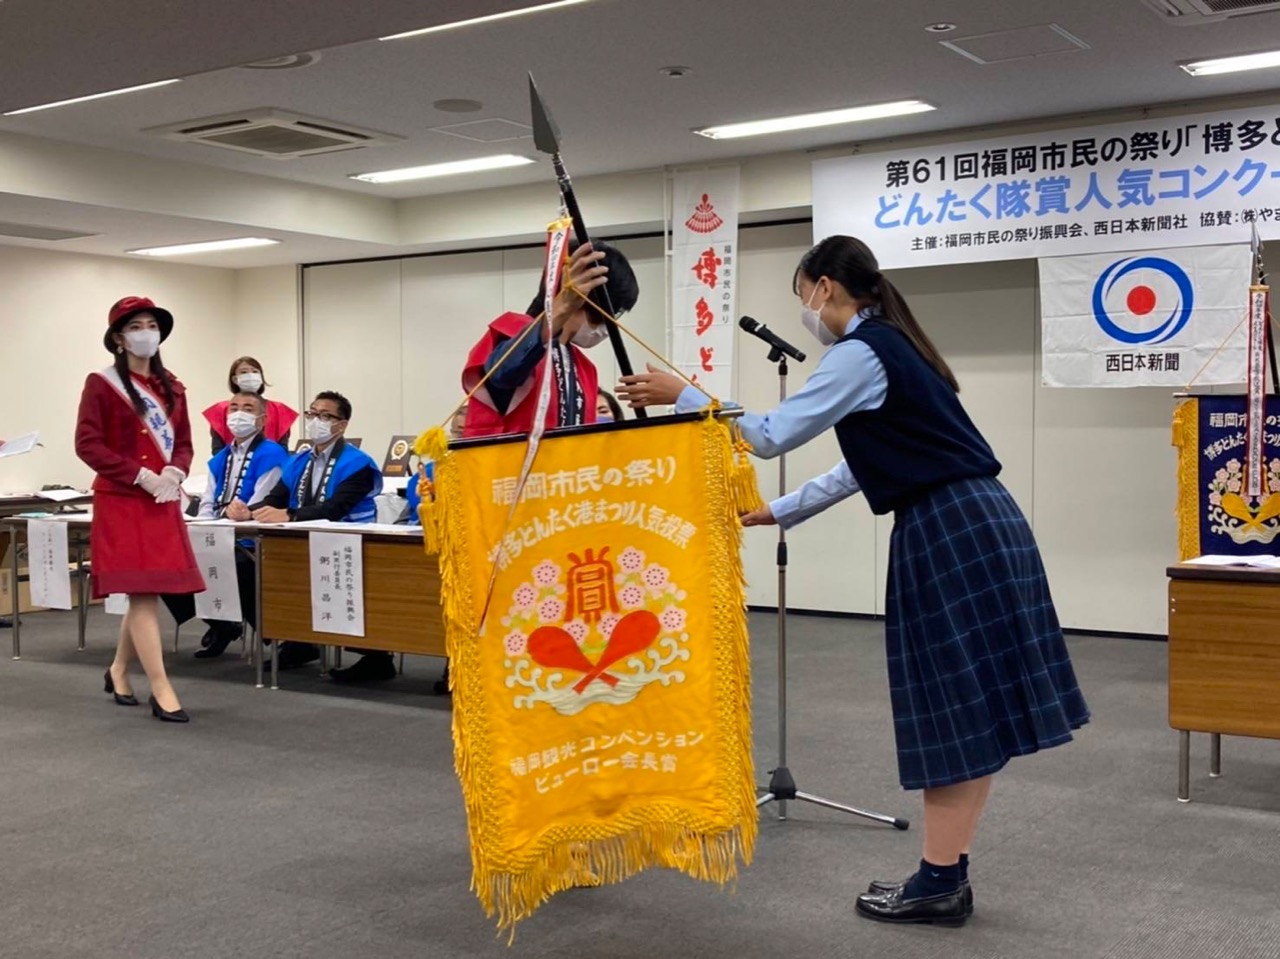 大人クラス生徒の福岡コンベンションビューロー会長賞旗授与の様子